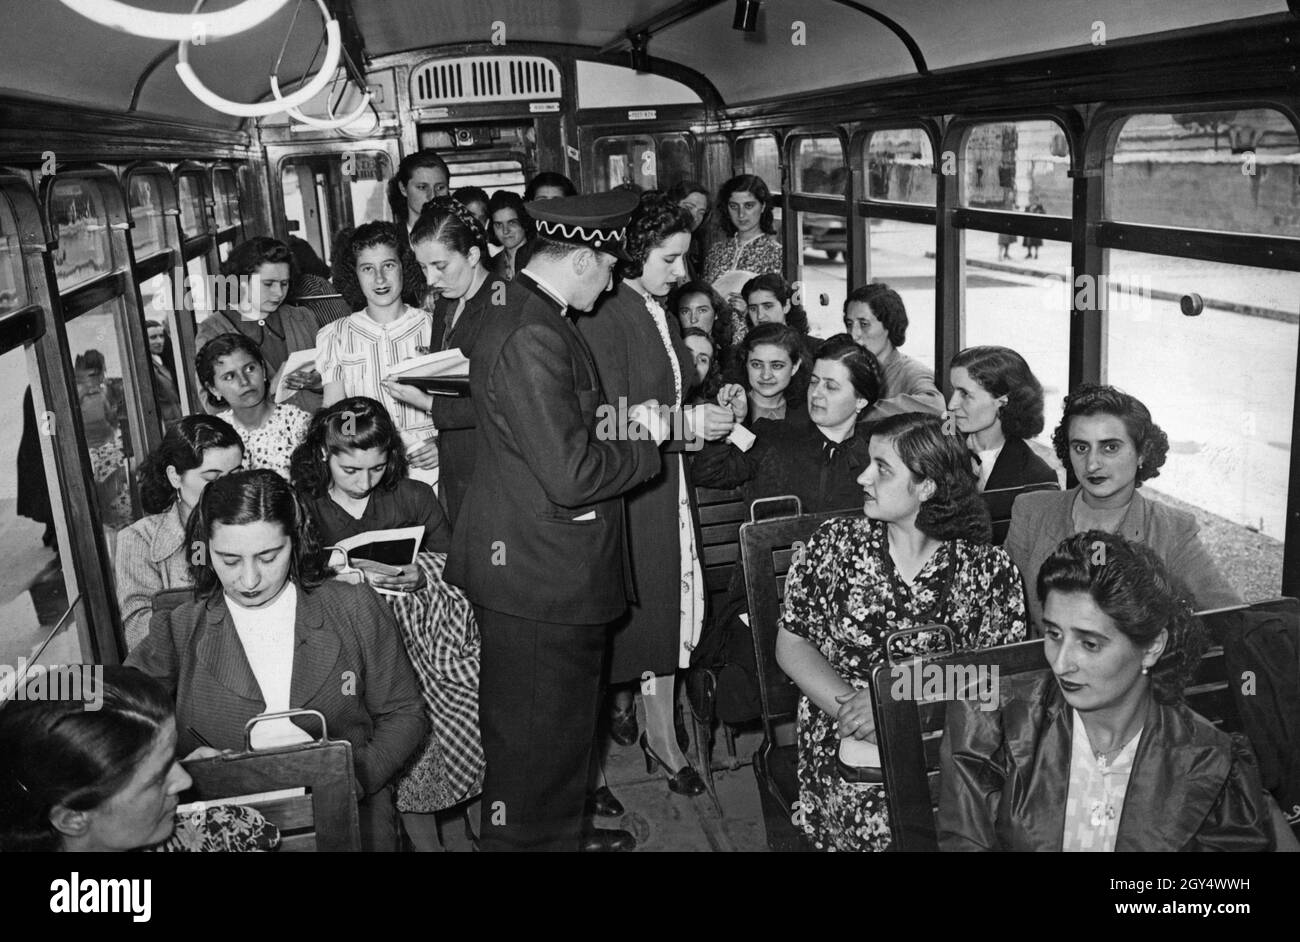 'Ces femmes sont inscrites à l'école ''Scuola per transviere' de Rome.En juin 1940, ils doivent compléter une unité d'apprentissage pratique dans un tramway.Au milieu, l'inspecteur observe une étudiante qui vend un billet.[traduction automatique]' Banque D'Images